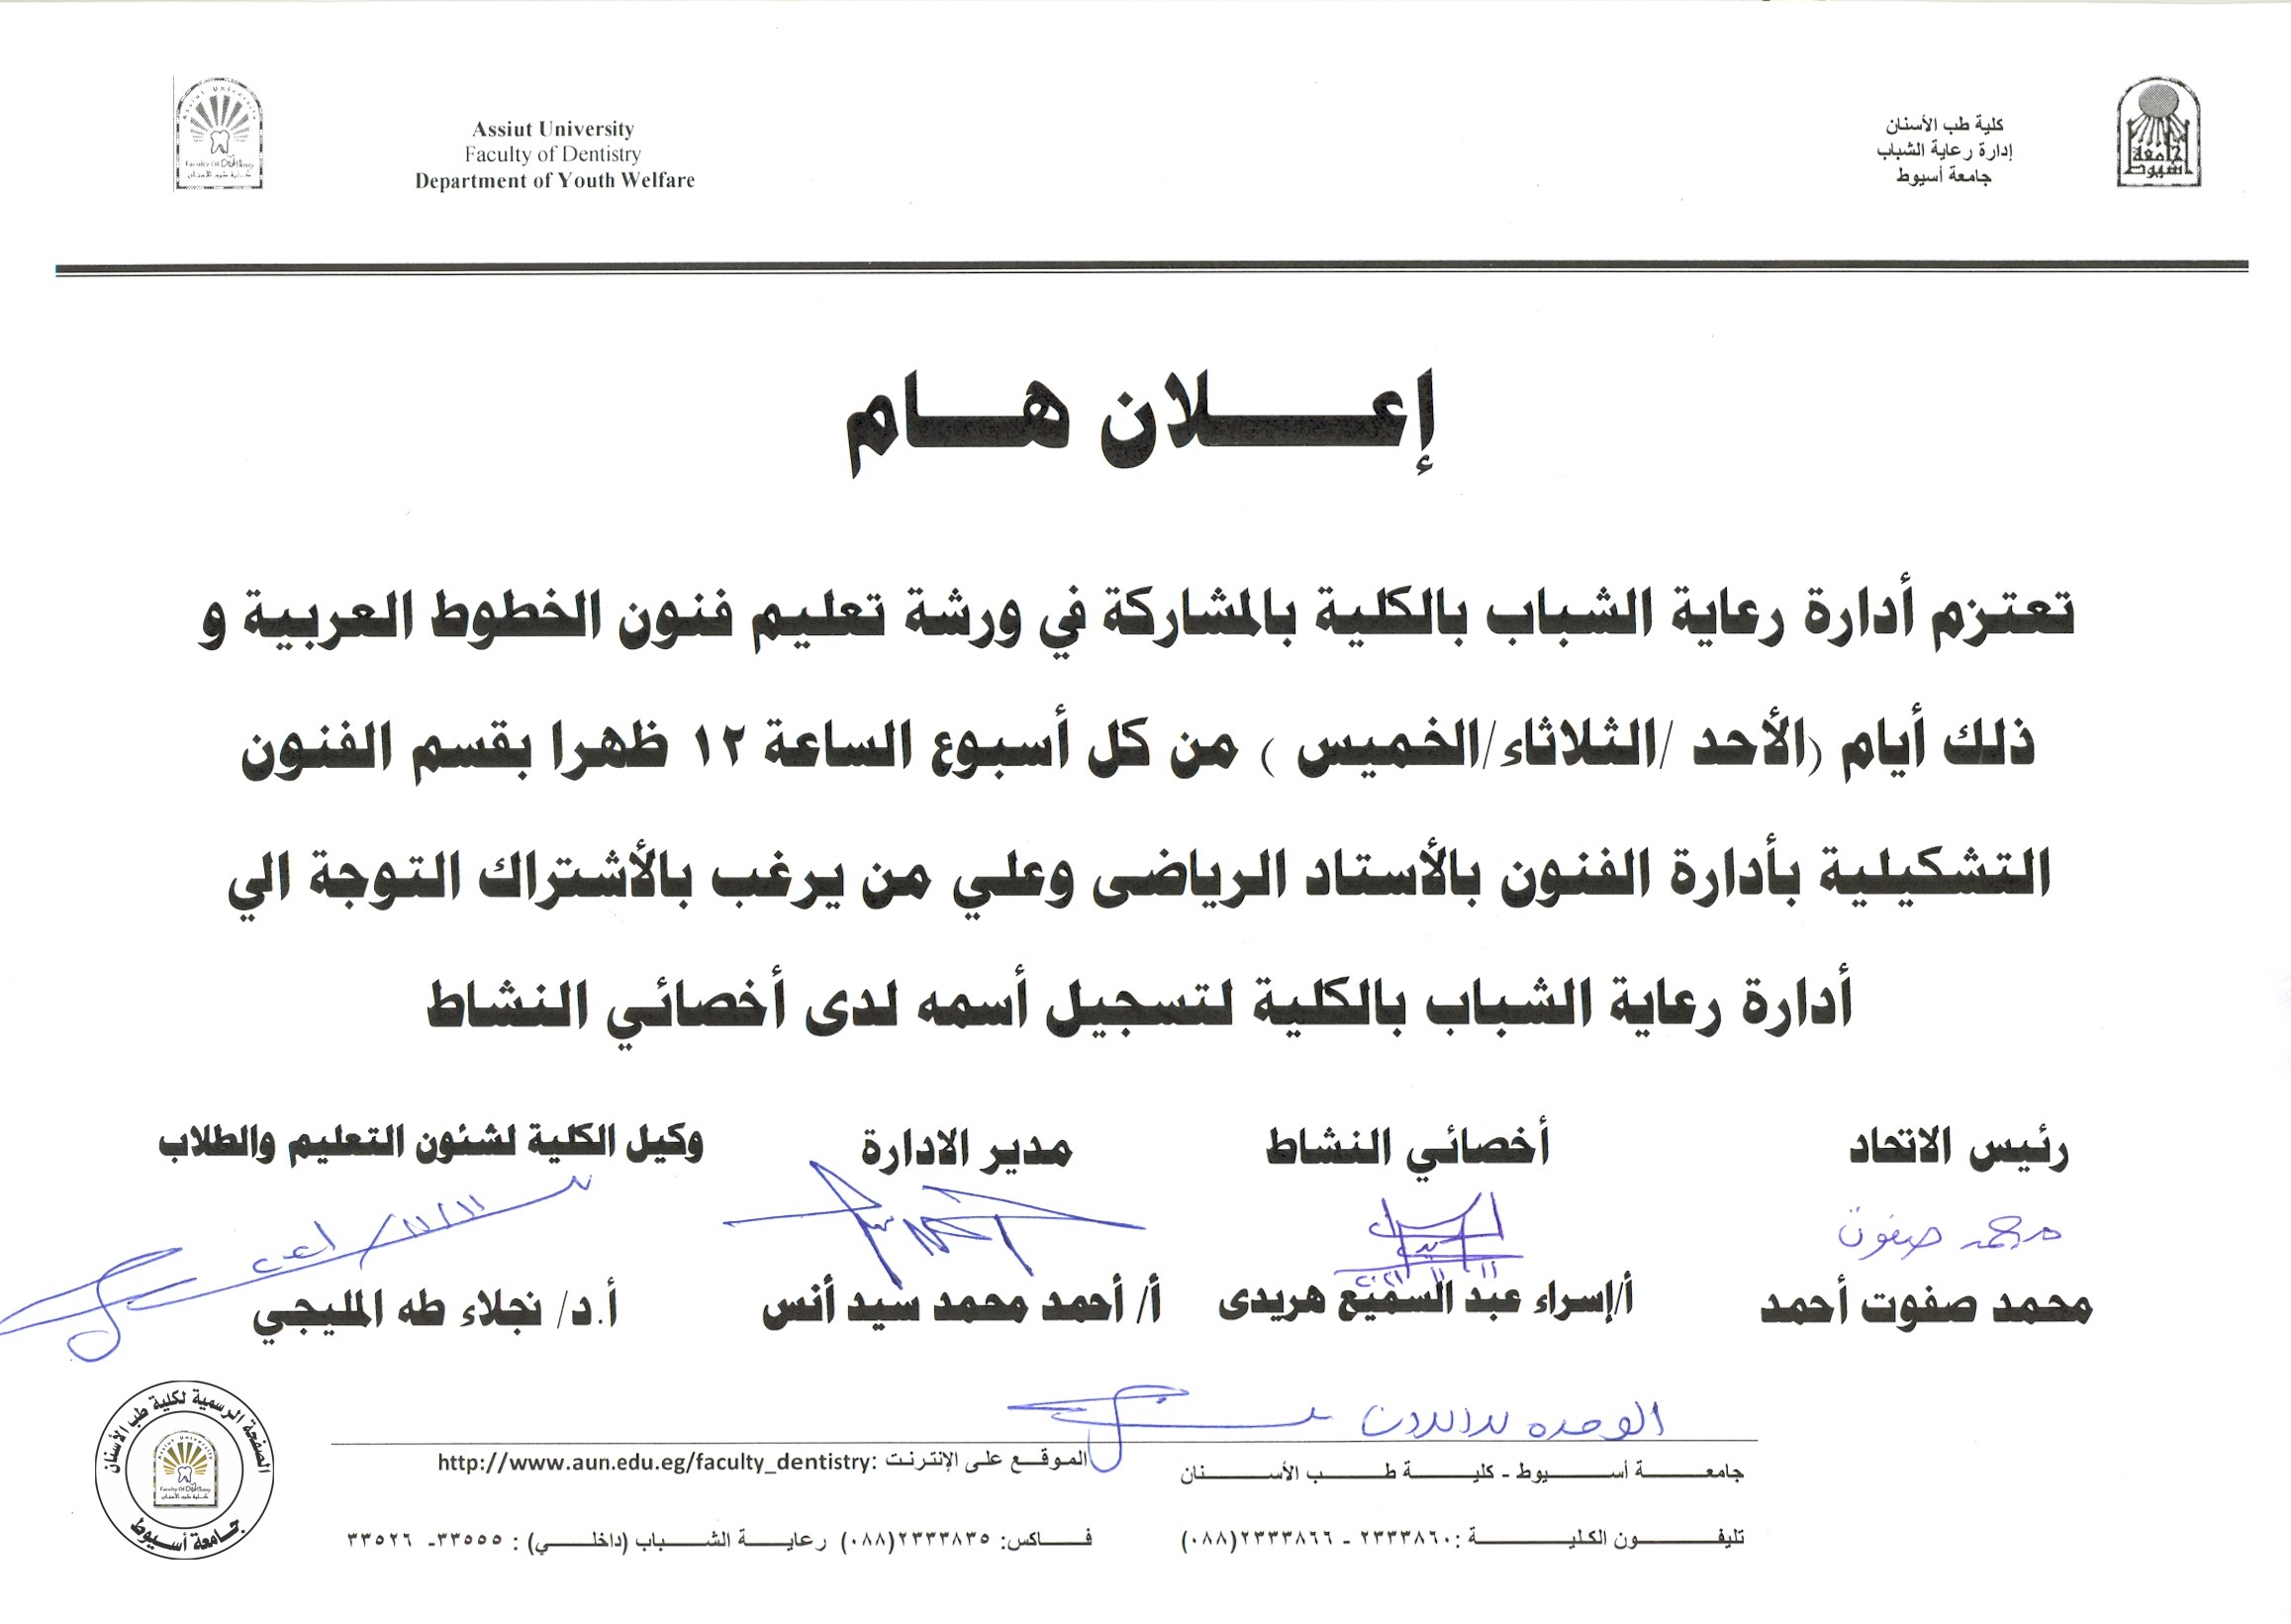 تعتزم إدارة رعاية الشباب بالكلية بالمشاركة في ورشة تعليم فنون الخطوط العربية .